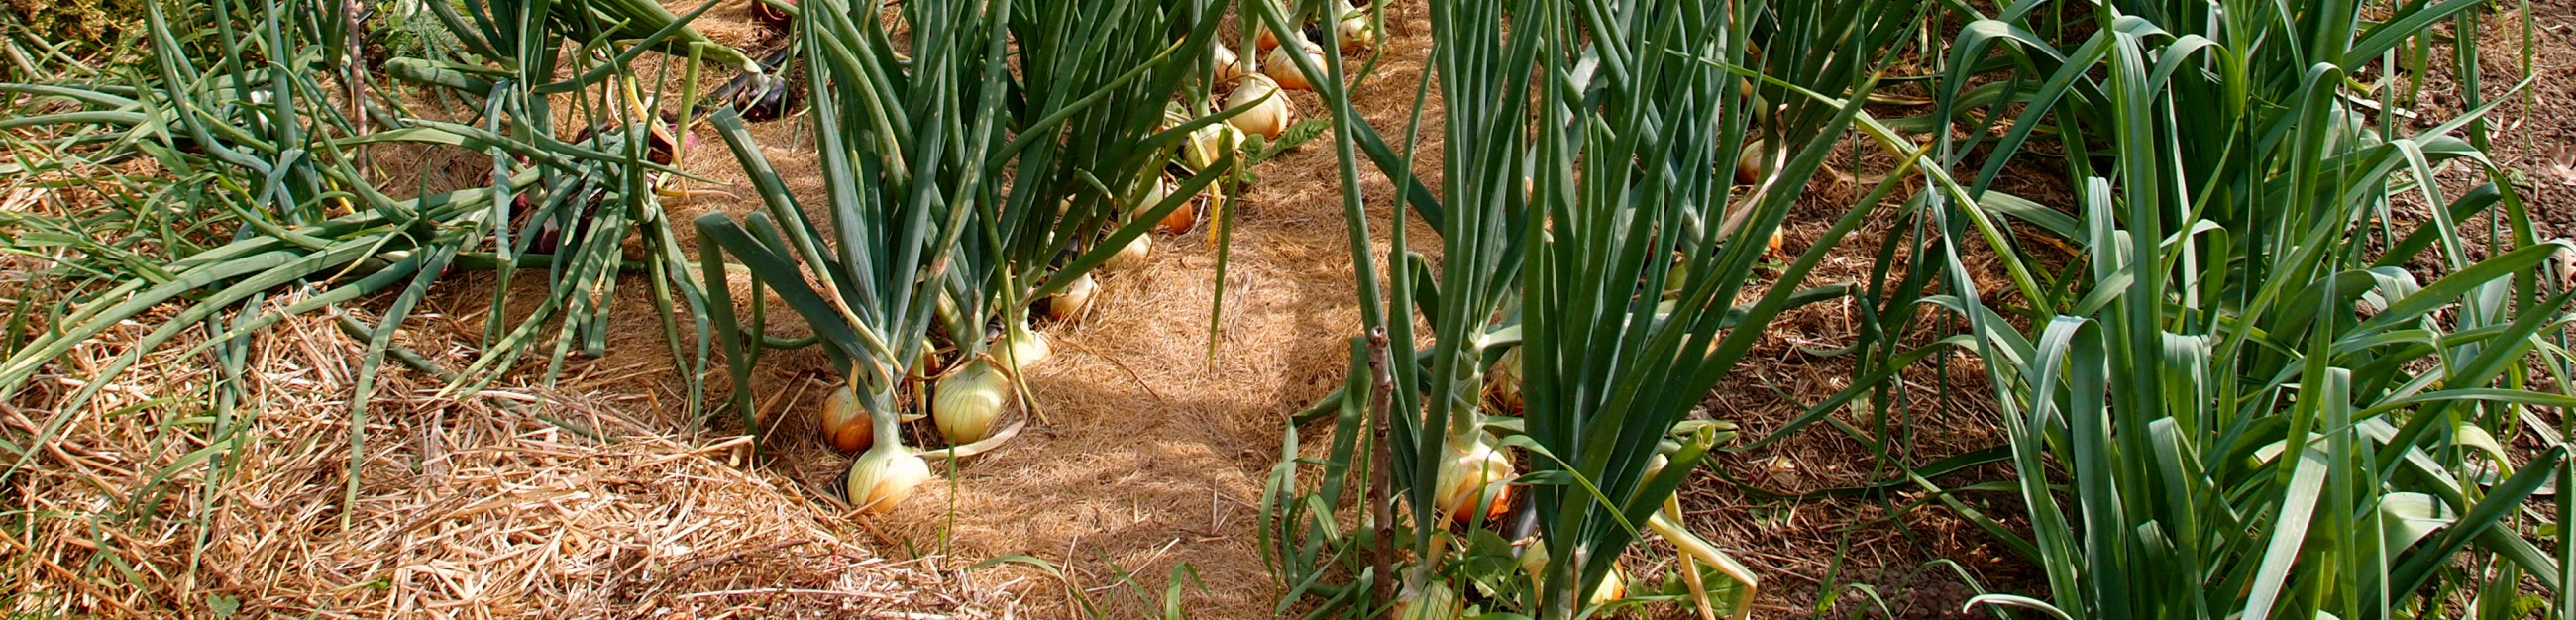 onions field 1